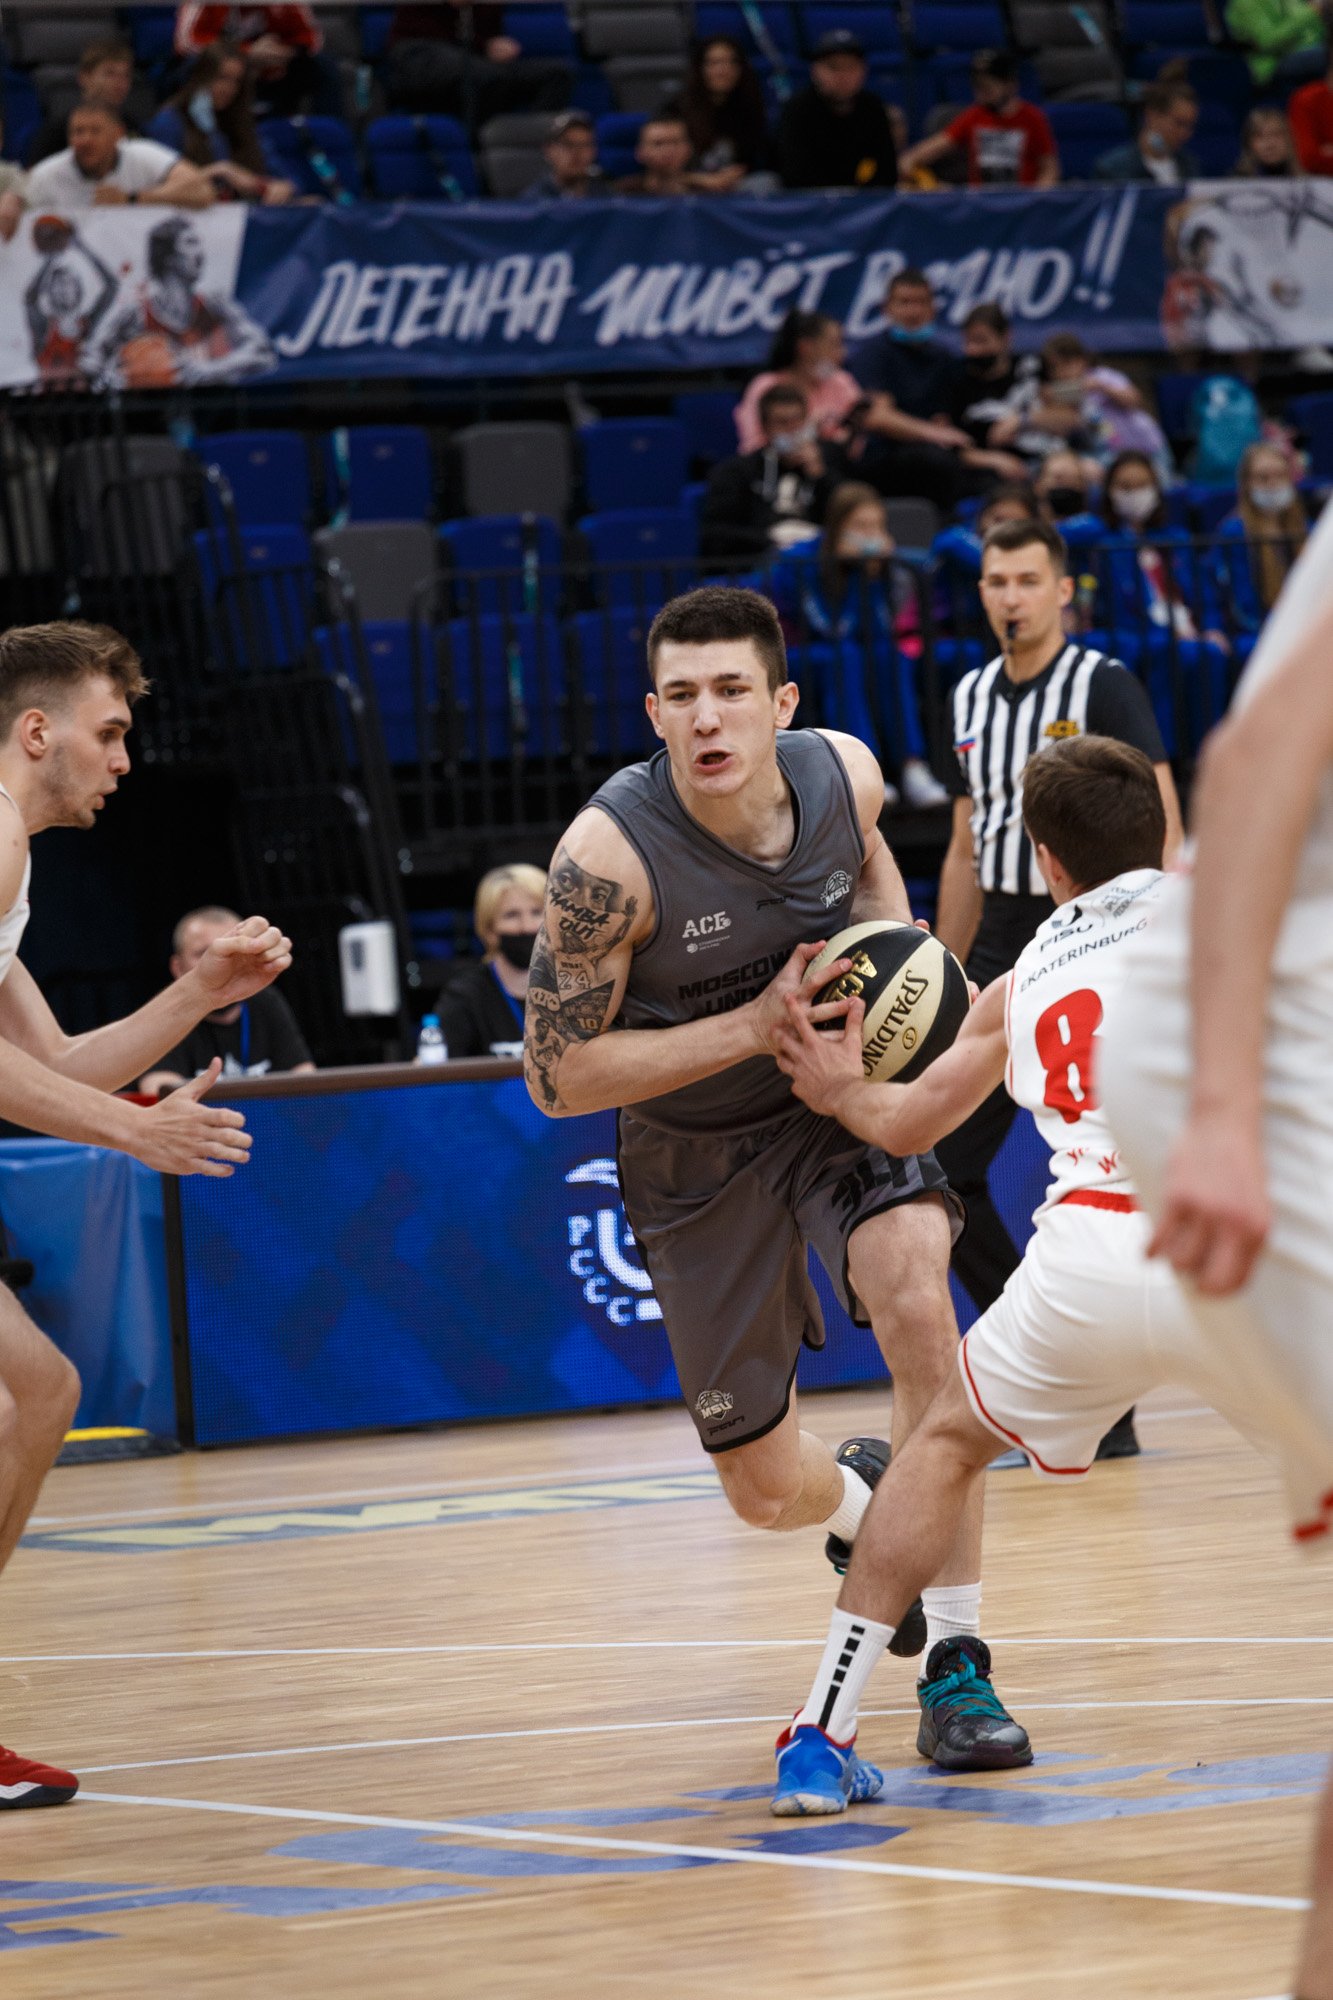 Суперфинал Ассоциации студенческого баскетбола РФ в «Белгород Арене»